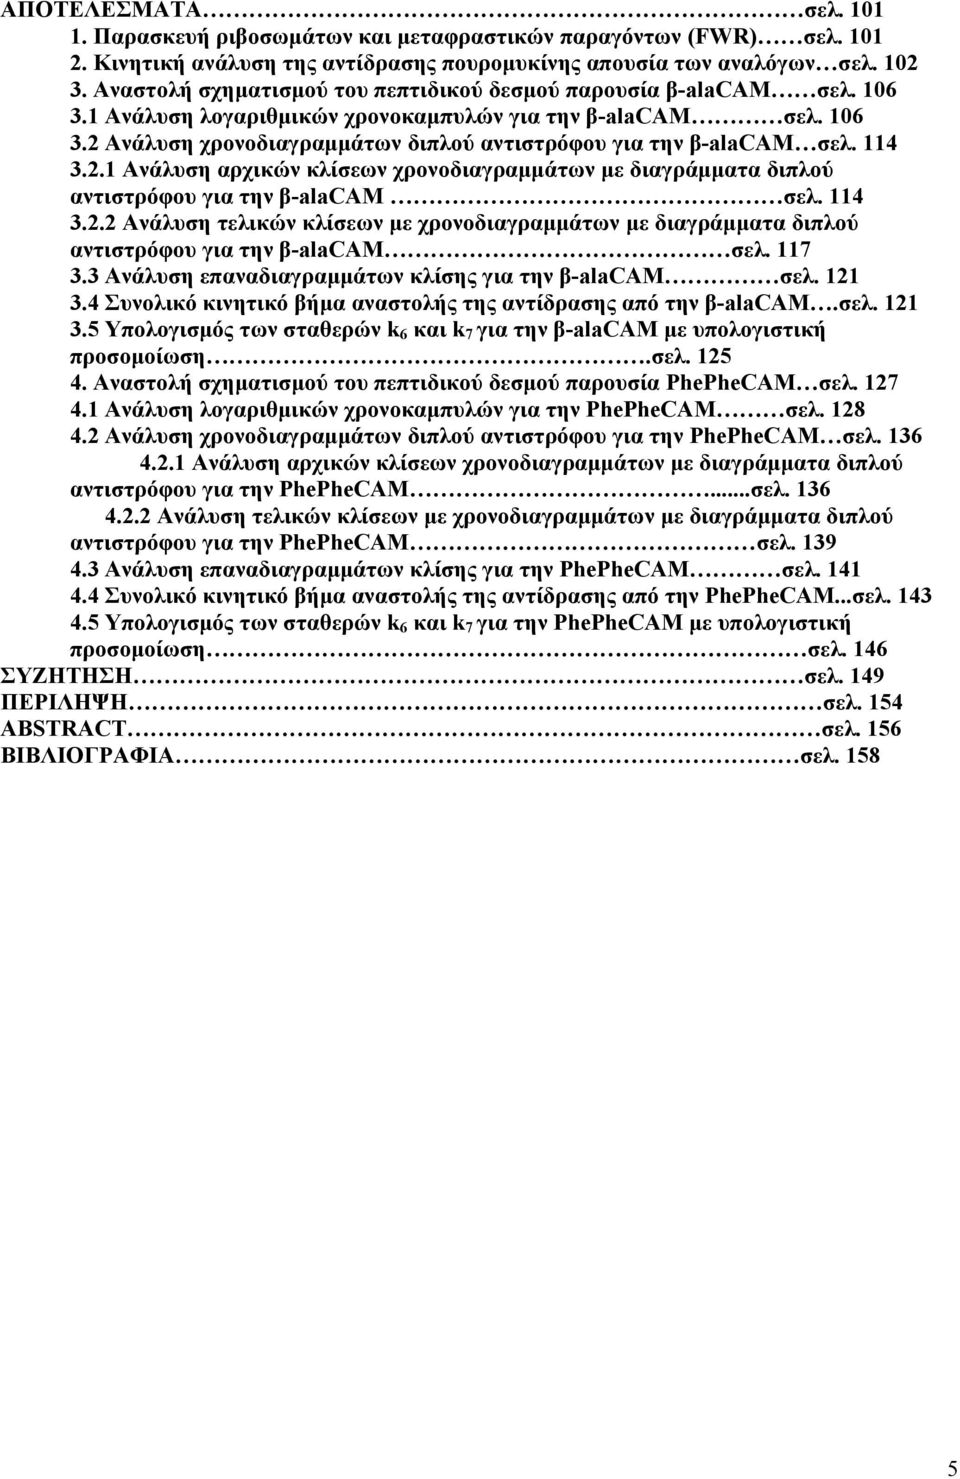 114 3.2.1 Ανάλυση αρχικών κλίσεων χρονοδιαγραμμάτων με διαγράμματα διπλού αντιστρόφου για την β-alacam σελ. 114 3.2.2 Ανάλυση τελικών κλίσεων με χρονοδιαγραμμάτων με διαγράμματα διπλού αντιστρόφου για την β-alacam σελ.